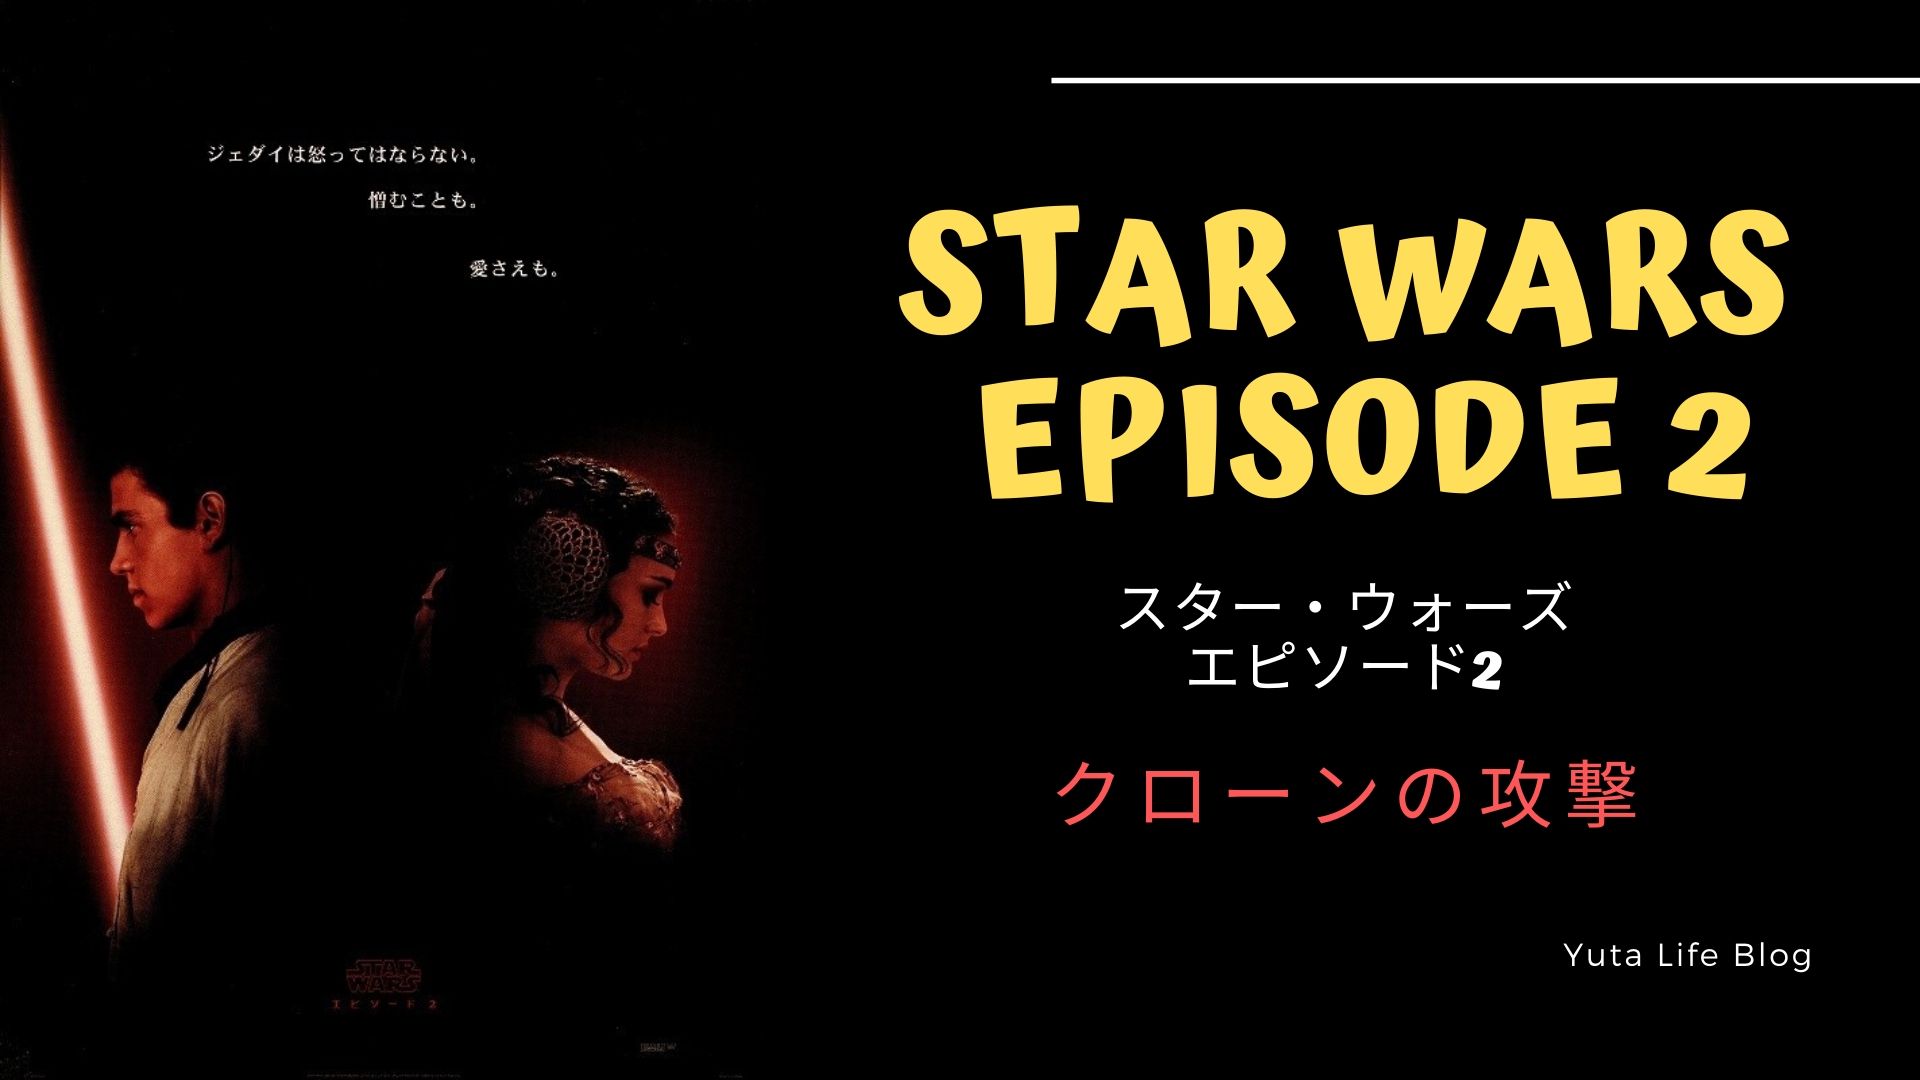 STAR WARS Episode 2